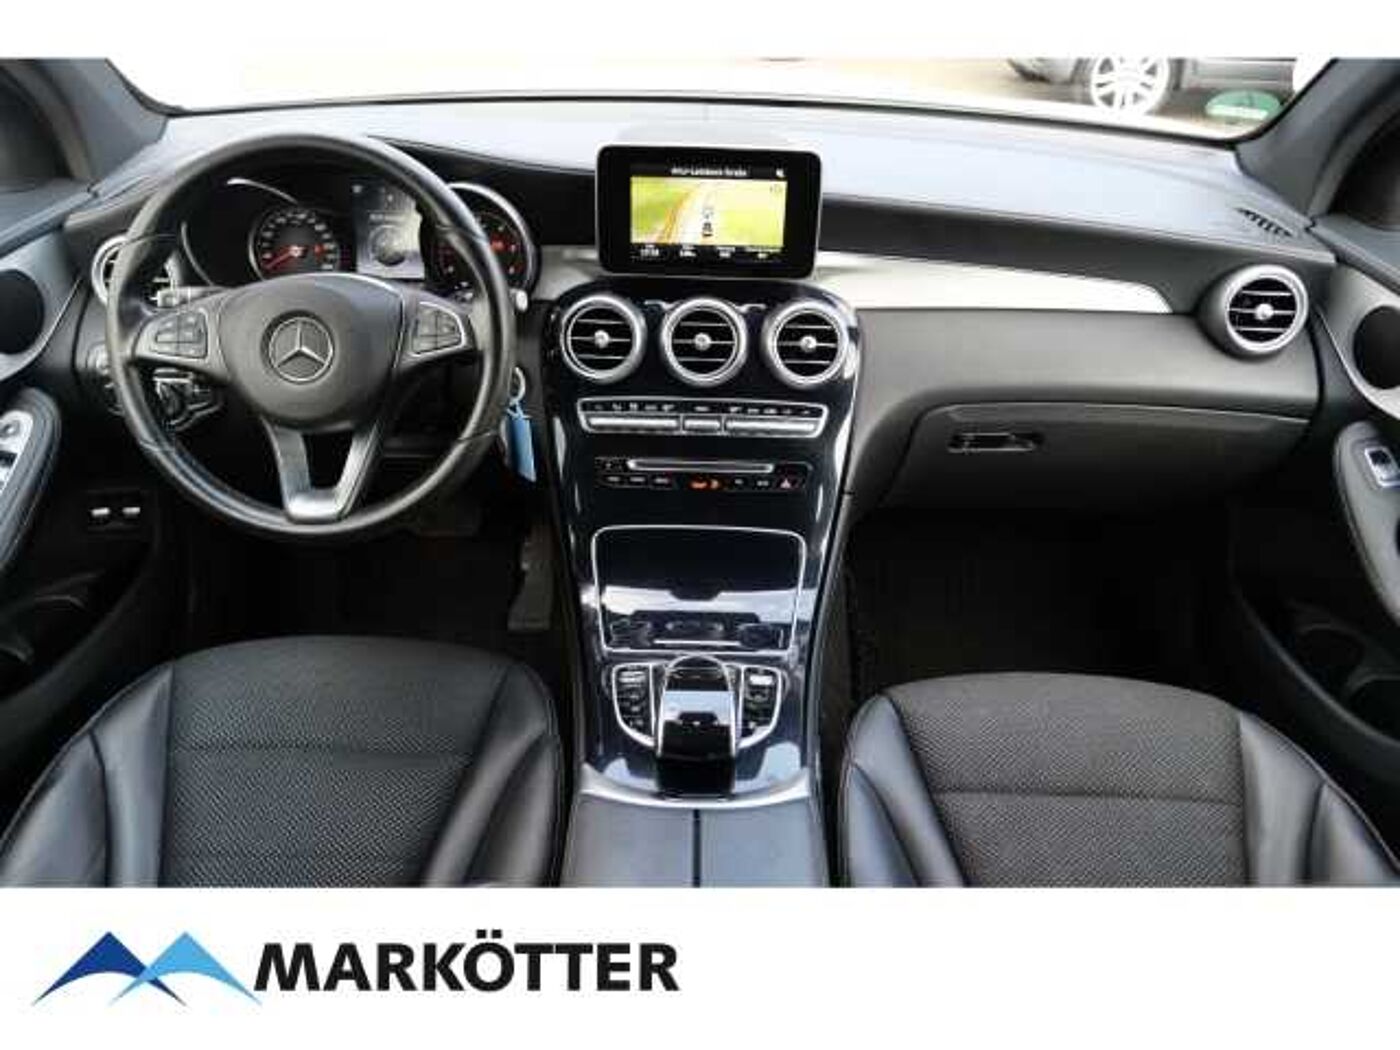 Mercedes-Benz  d 4matic Exclus. Navi/AHK/Mehrwertsteuer